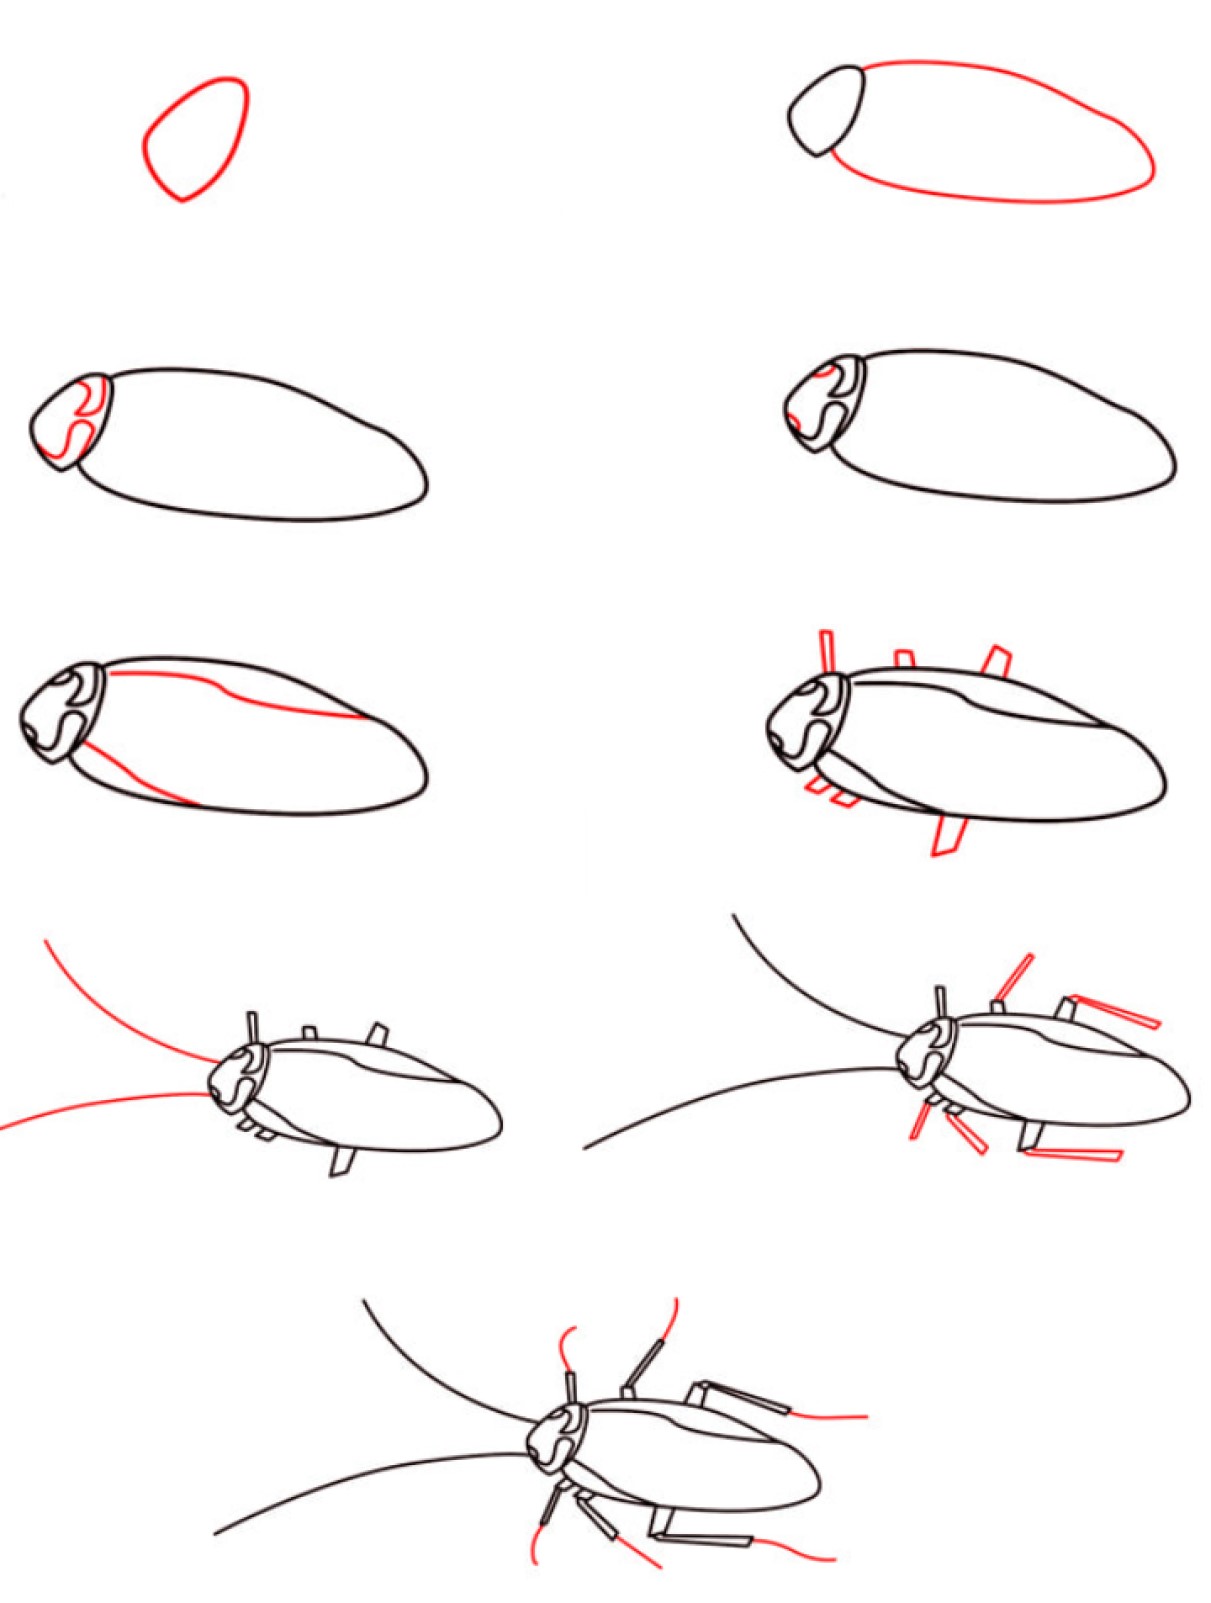 Hamamböcekleri fikri (4) çizimi